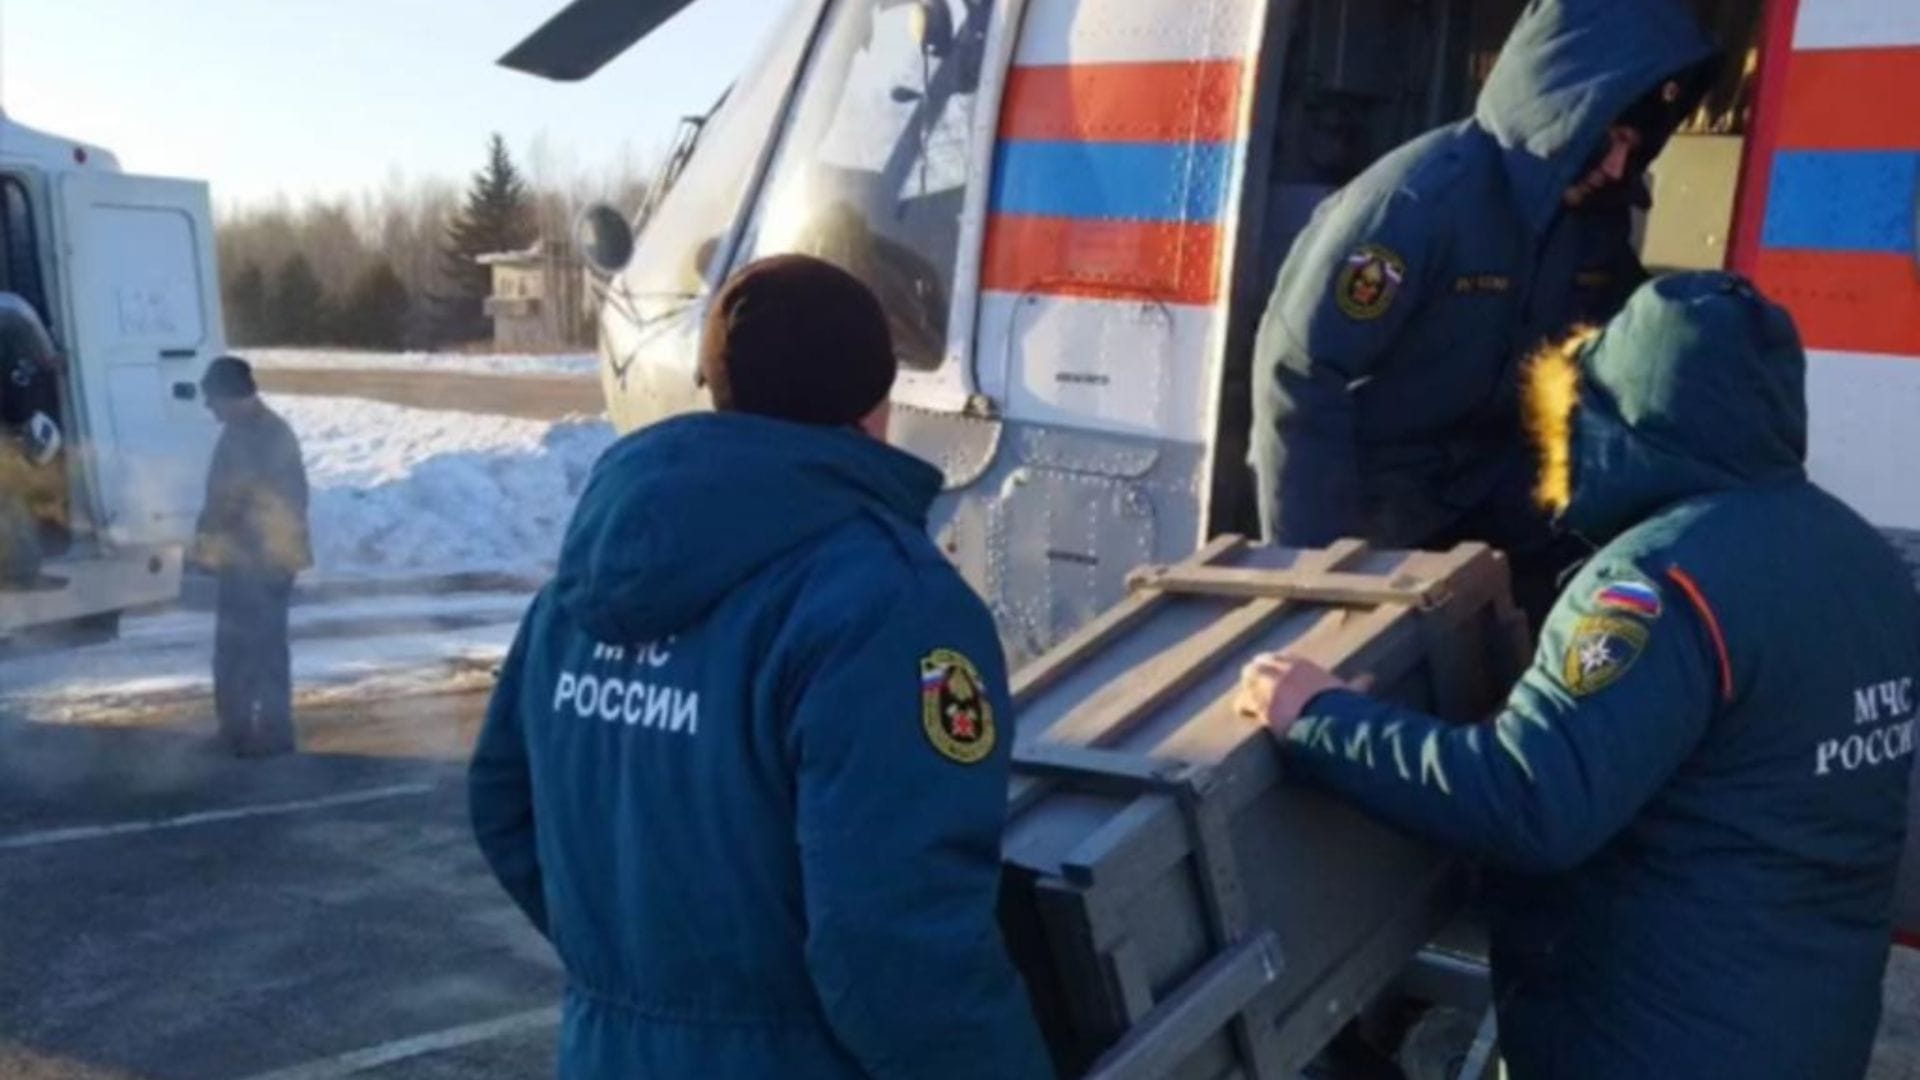 Rescatistas luchan contra los escombros y el agua para salvar a 13 mineros rusos atrapados